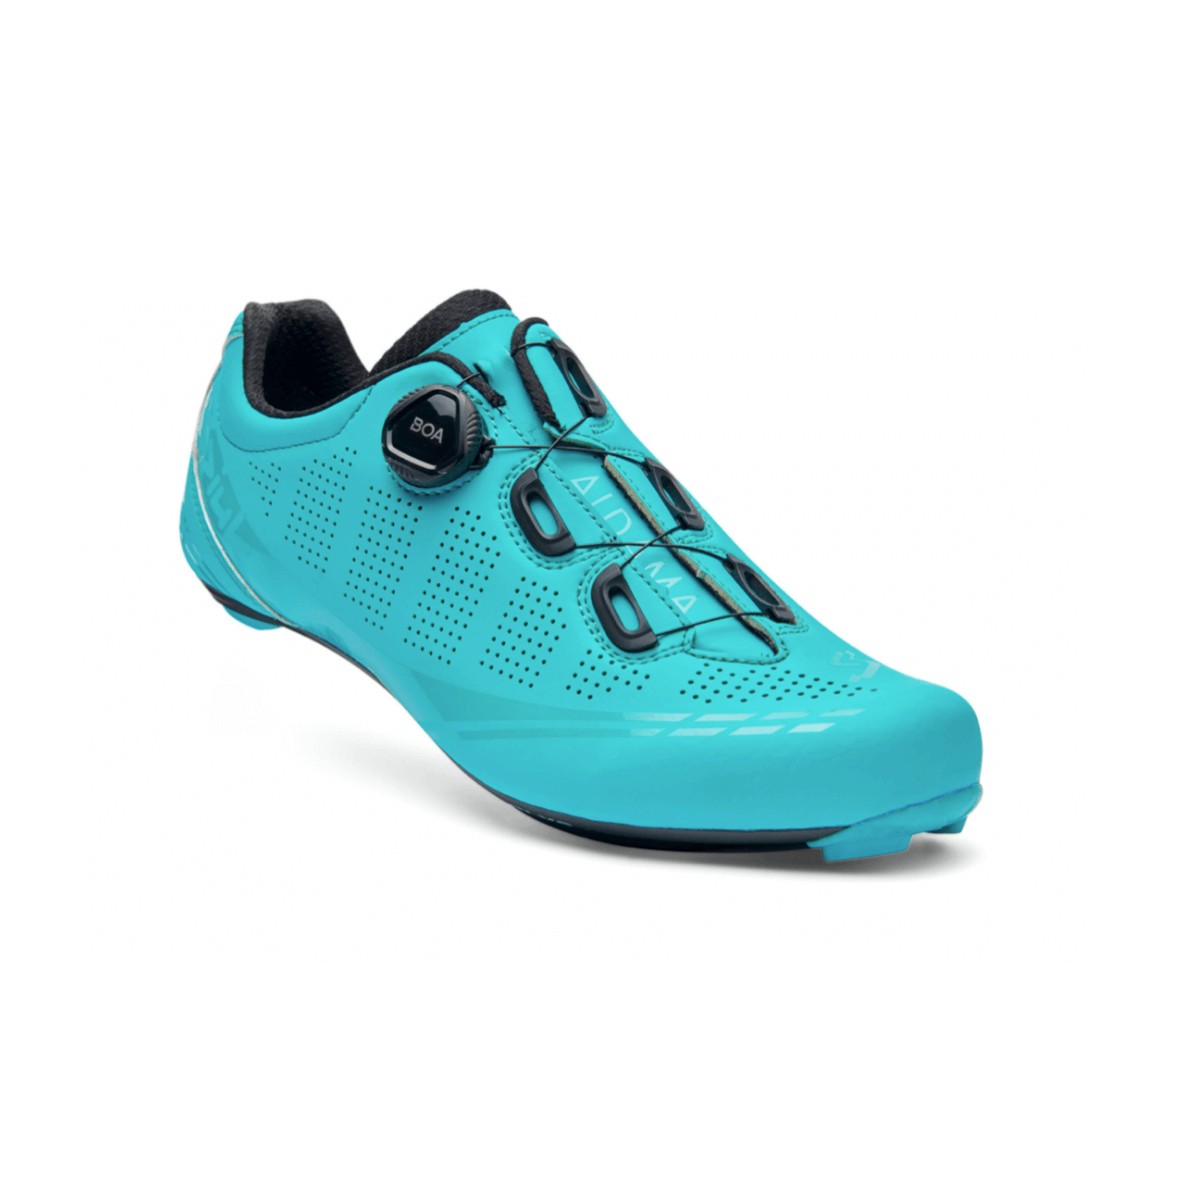 Spiuk Aldama Road Carbon Matte Turquoise Shoes, Size 42 - EUR